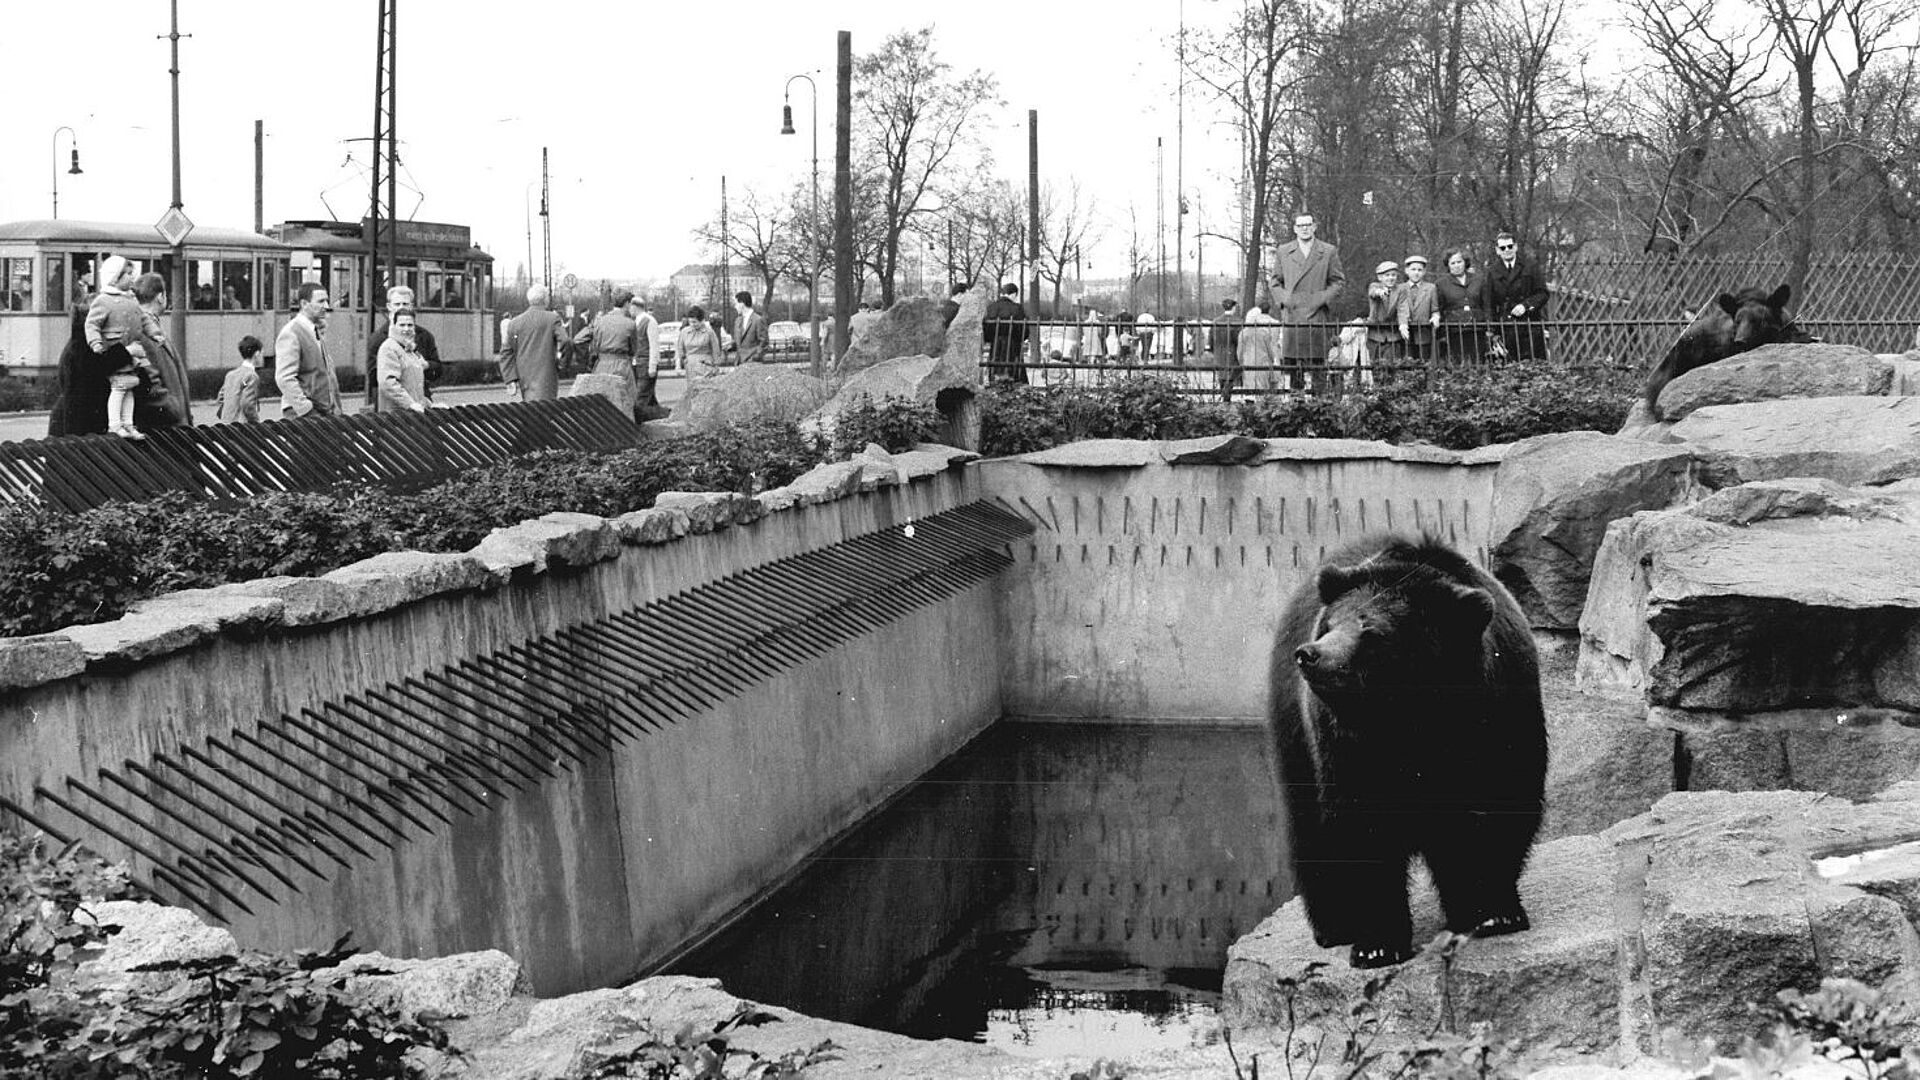 Ein Bär steht auf einem Felsen im Tierpark Berlin-Friedrichsfelde. Im Hintergrund sind Menschen zu sehen.